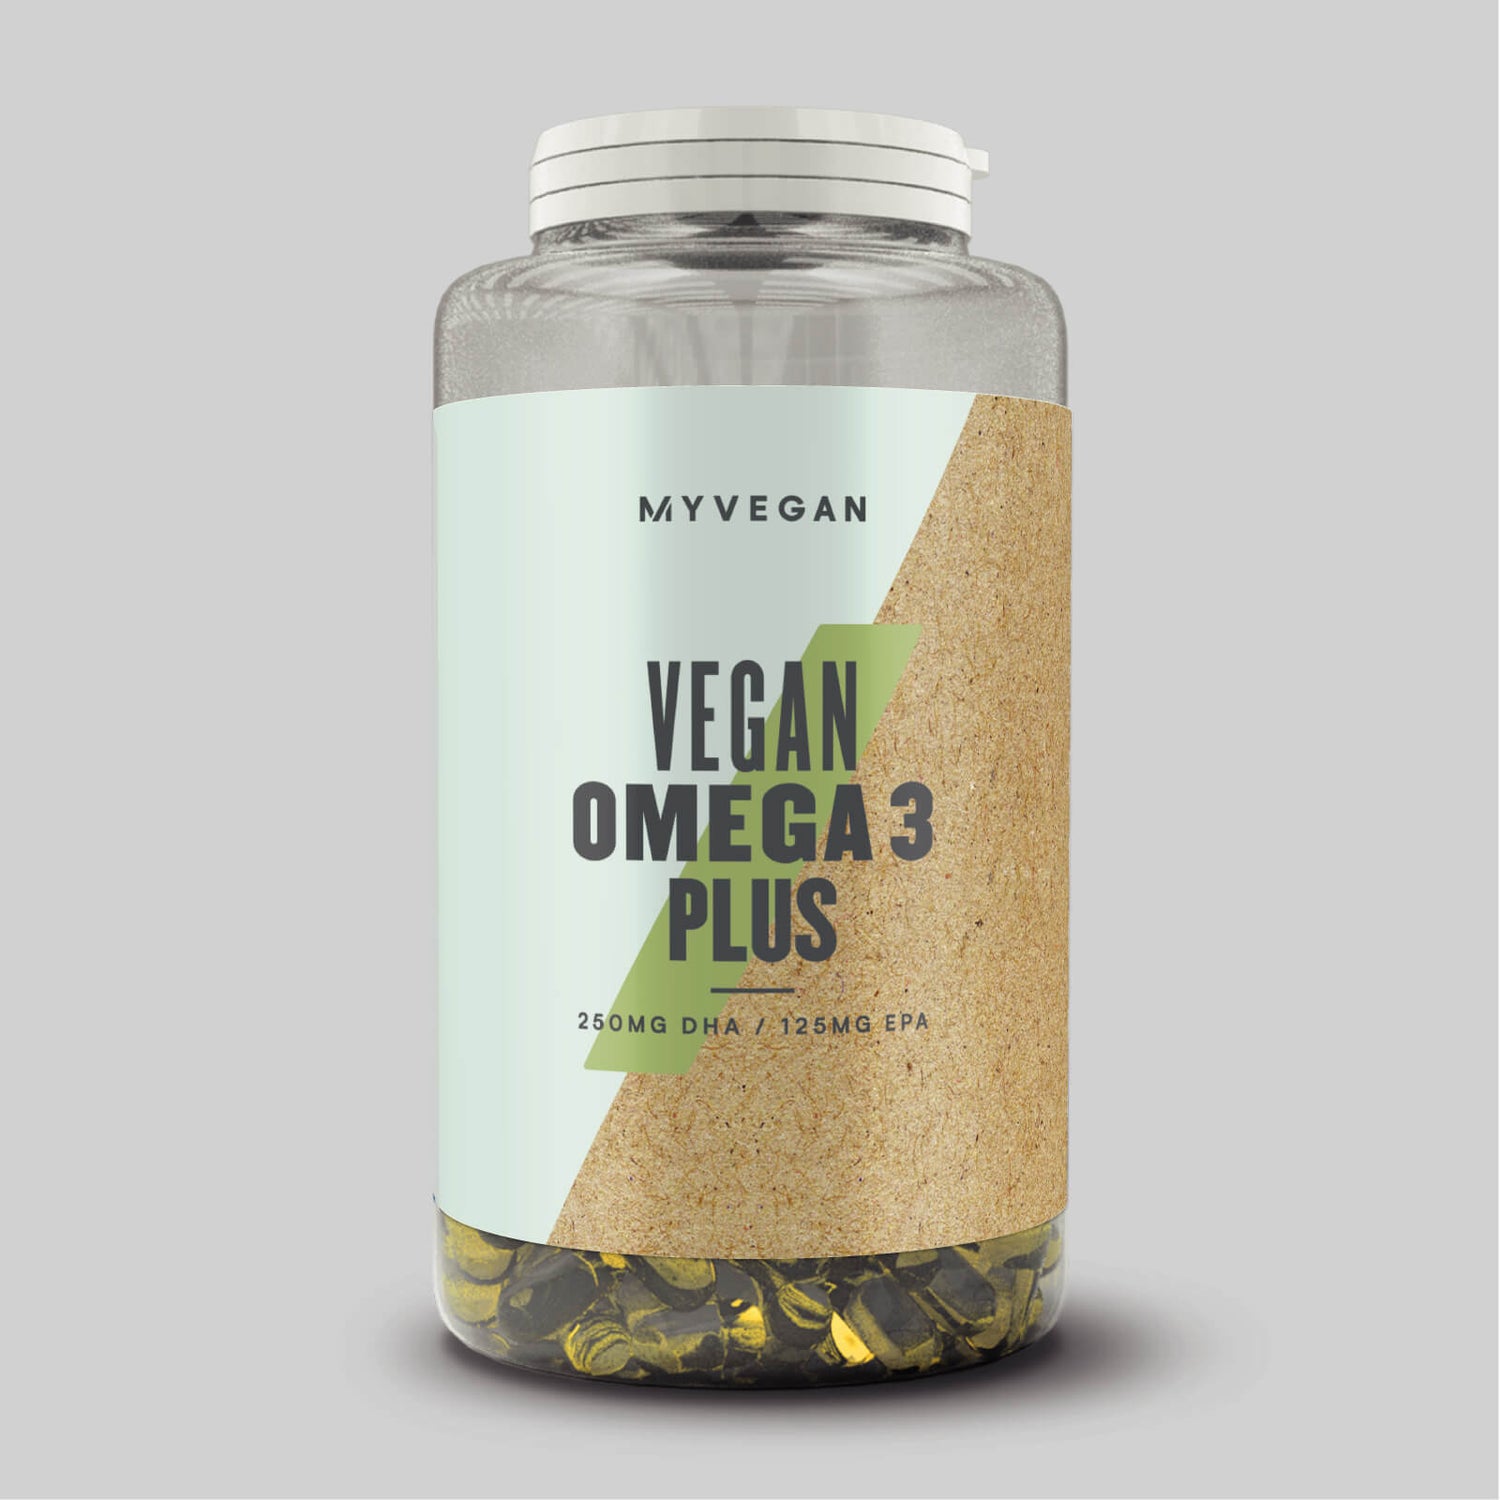 Omega 3 Plus vegano